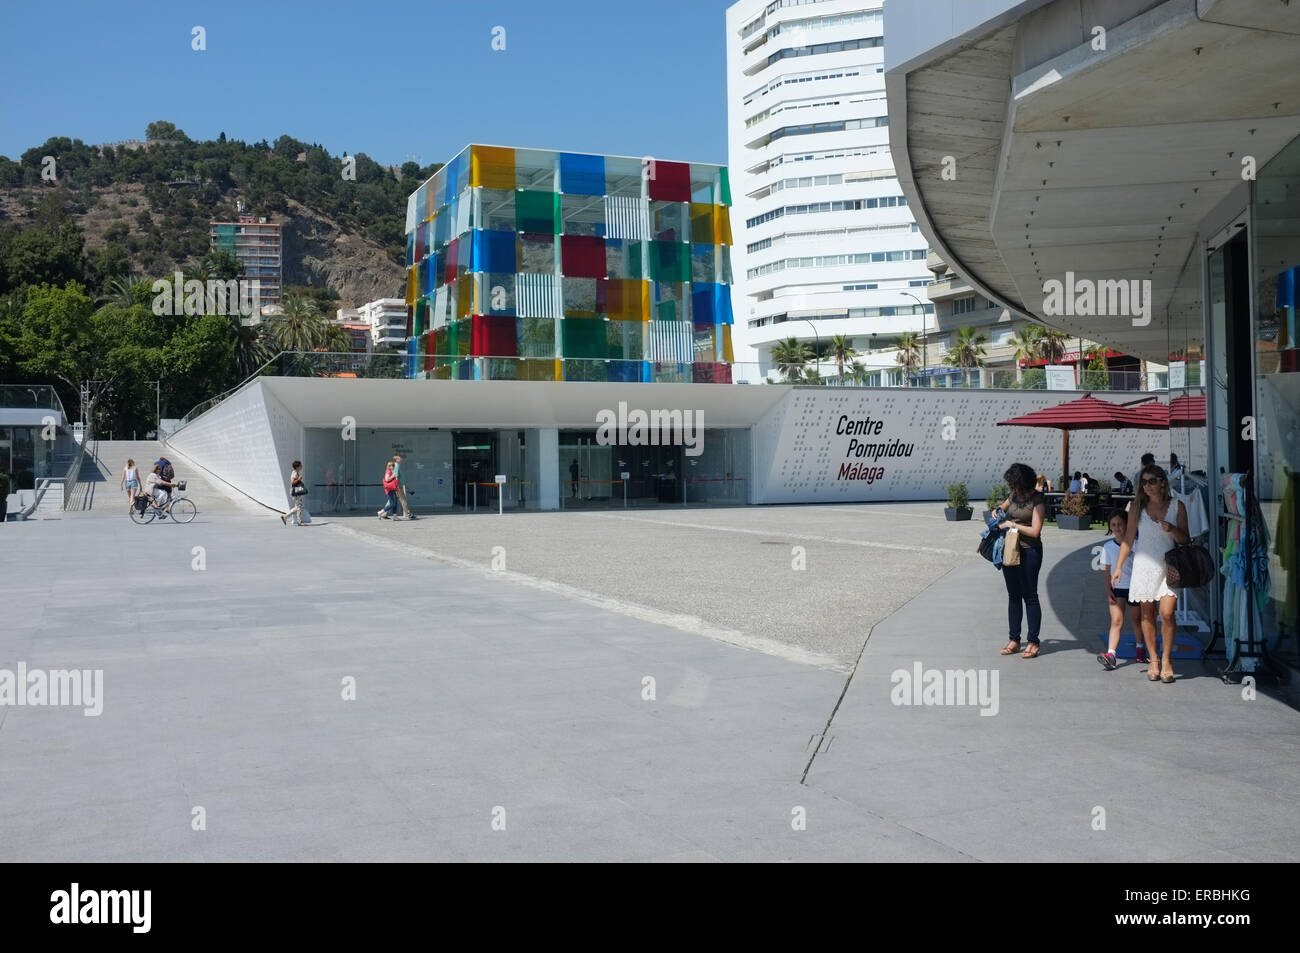 Exterior view of the Centro Pompidou Málaga, Spain Stock Photo